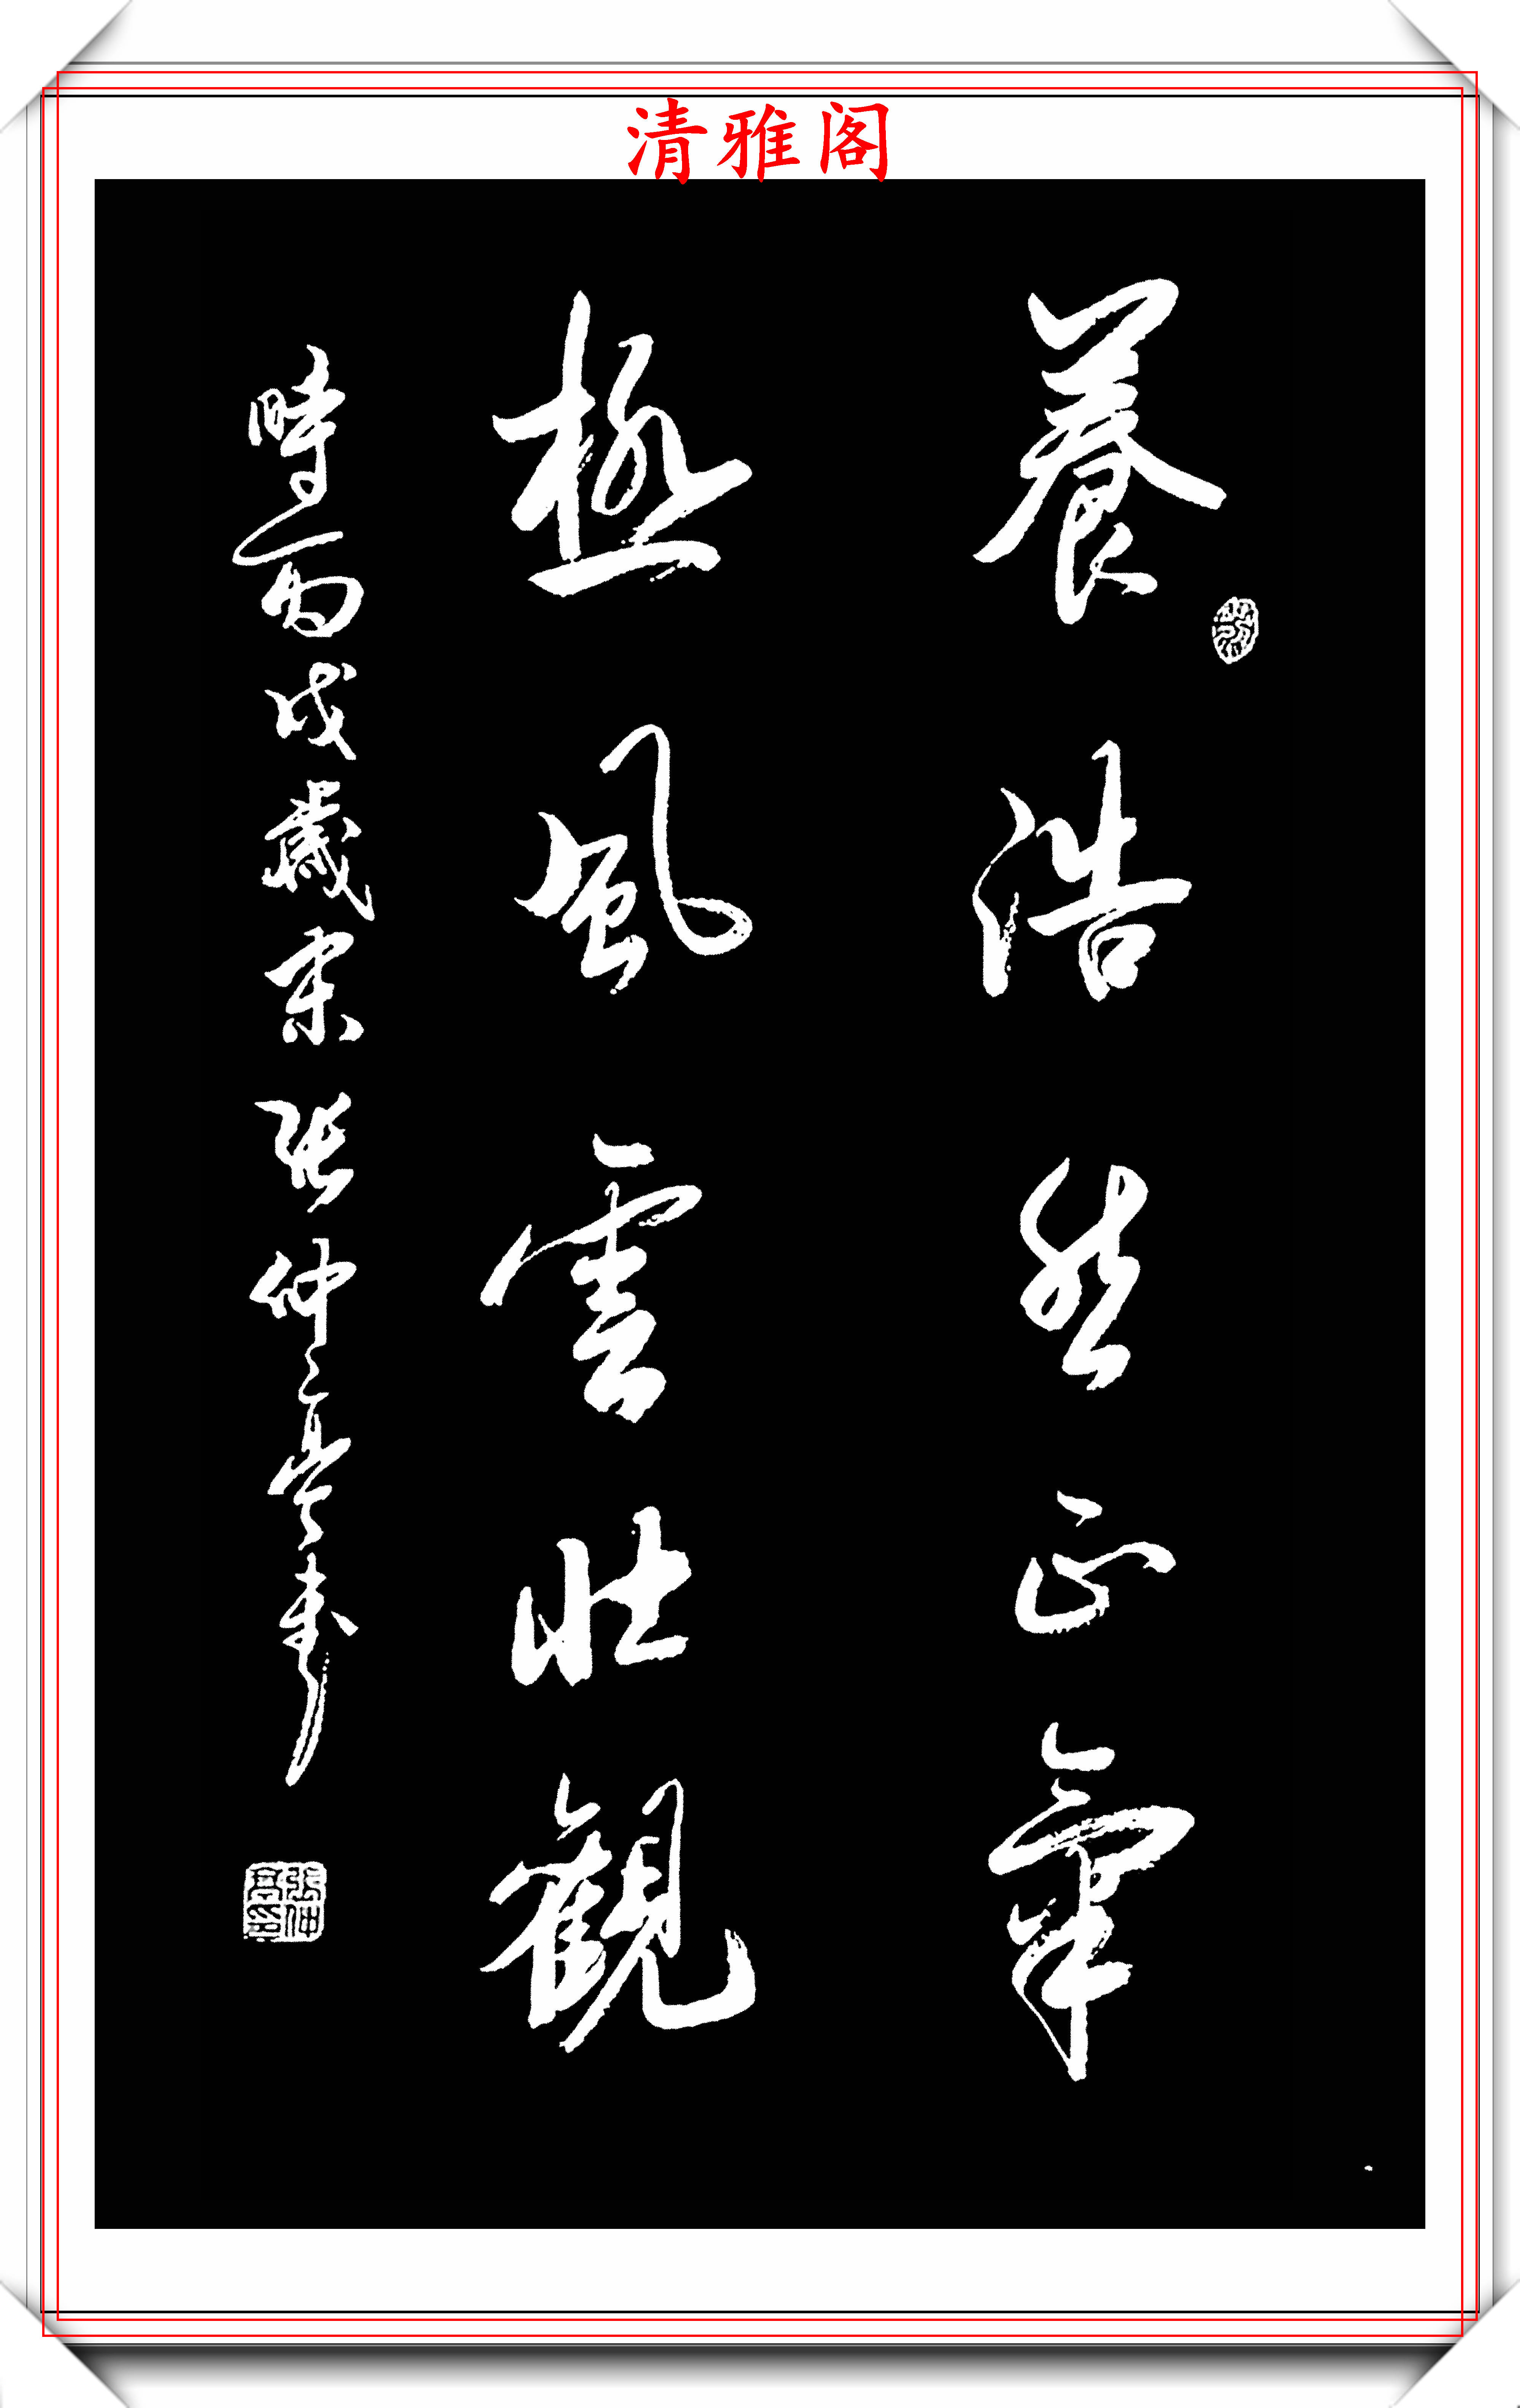 中书协理事张仲亭,18幅获奖书法作品欣赏,行云流水,自然飘逸